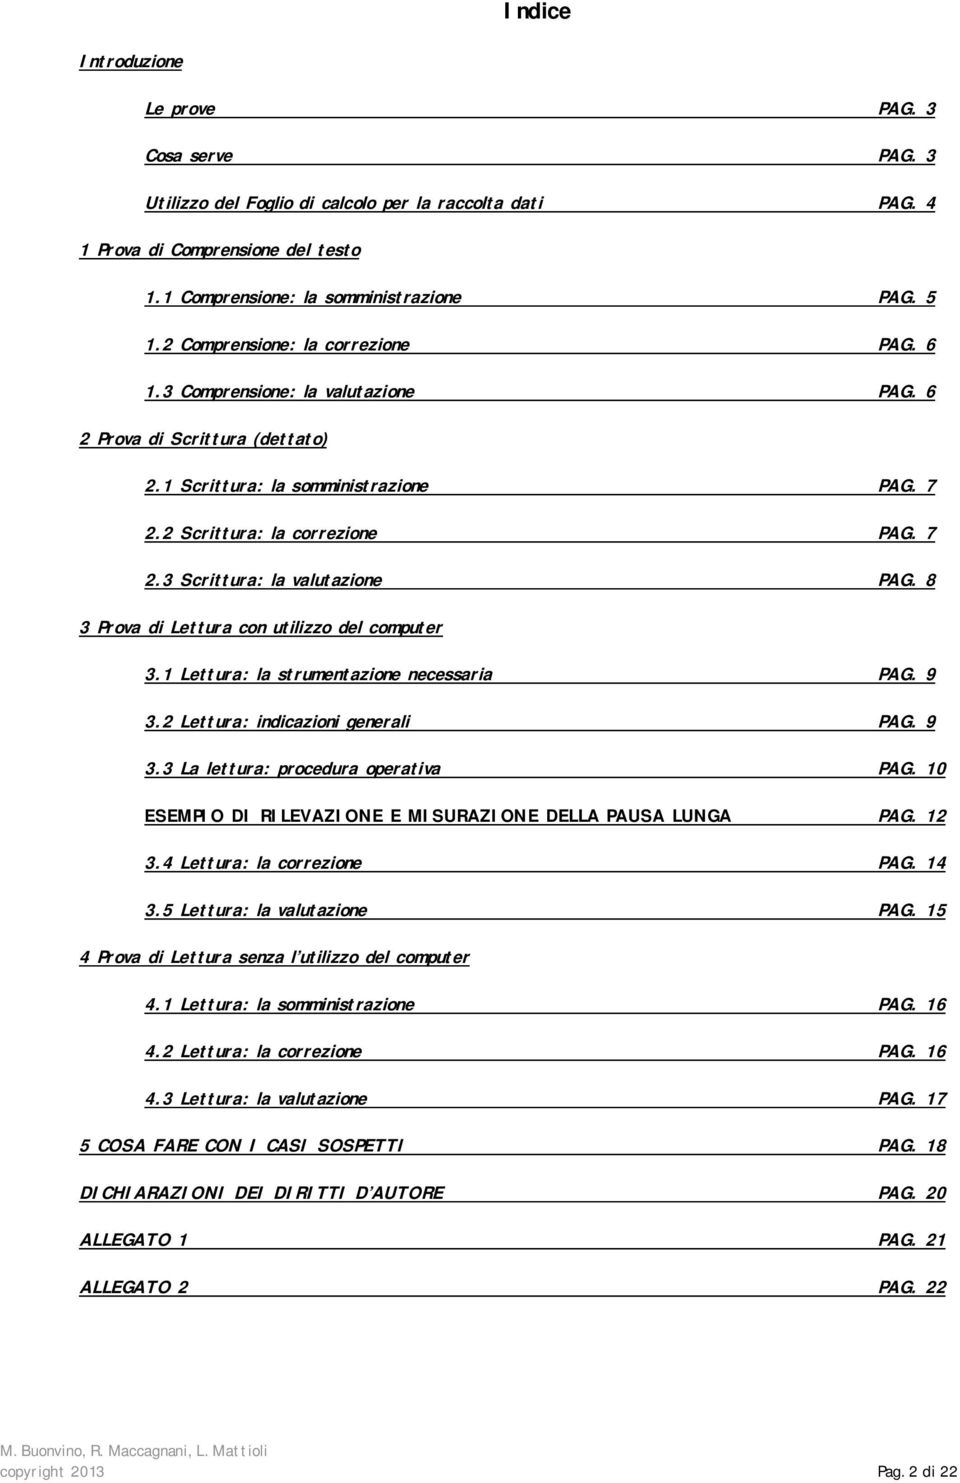 8 3 Prova di Lettura con utilizzo del computer 3.1 Lettura: la strumentazione necessaria PAG. 9 3.2 Lettura: indicazioni generali PAG. 9 3.3 La lettura: procedura operativa PAG.